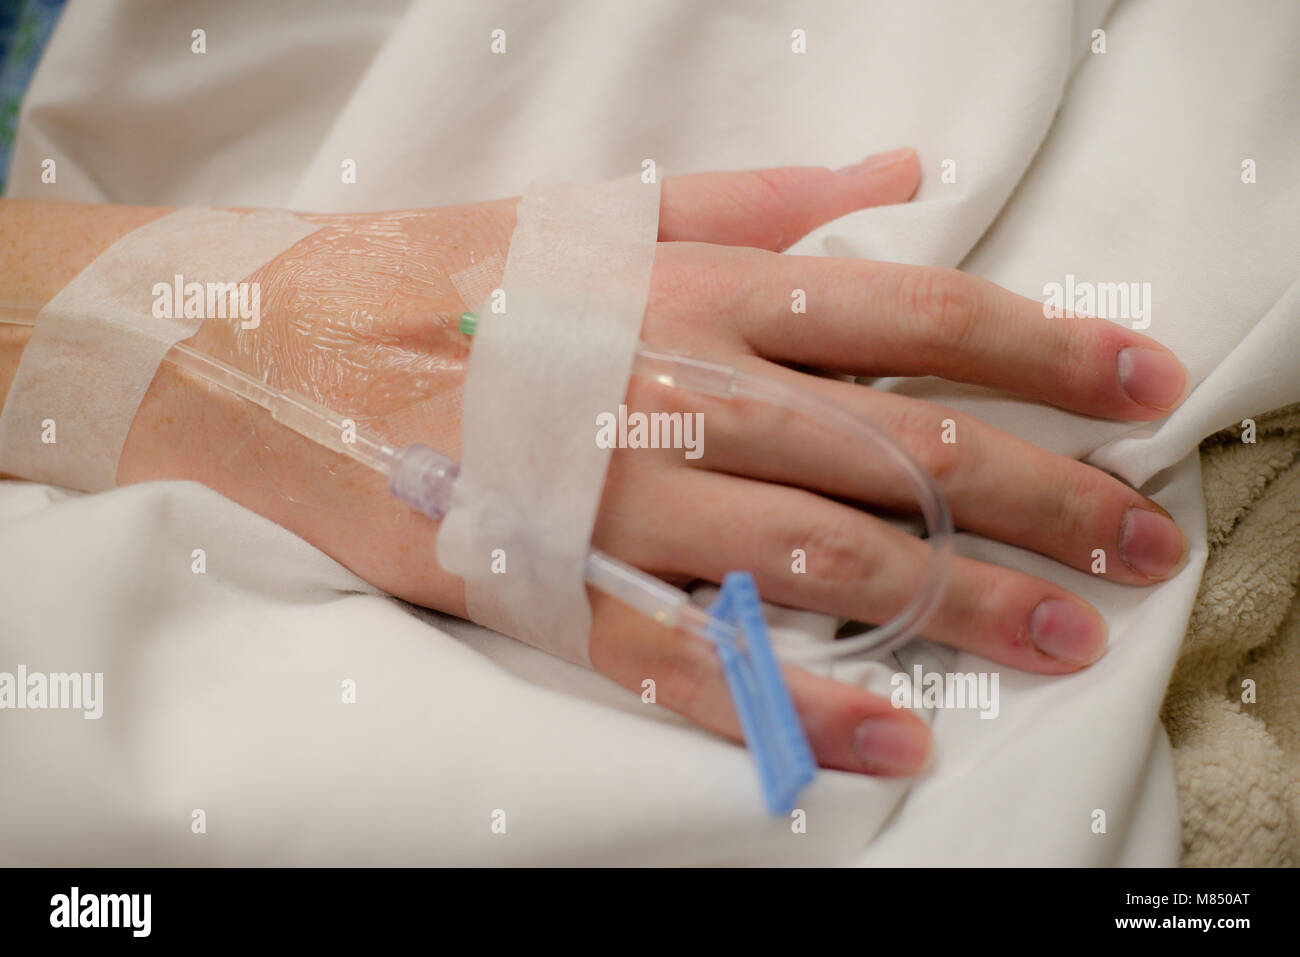 Horizontale Bild von Hand mit intravenious Fluid aufgenommene ruht auf weiße Decke im Krankenhaus. Mit der intravenösen Behandlung Stockfoto